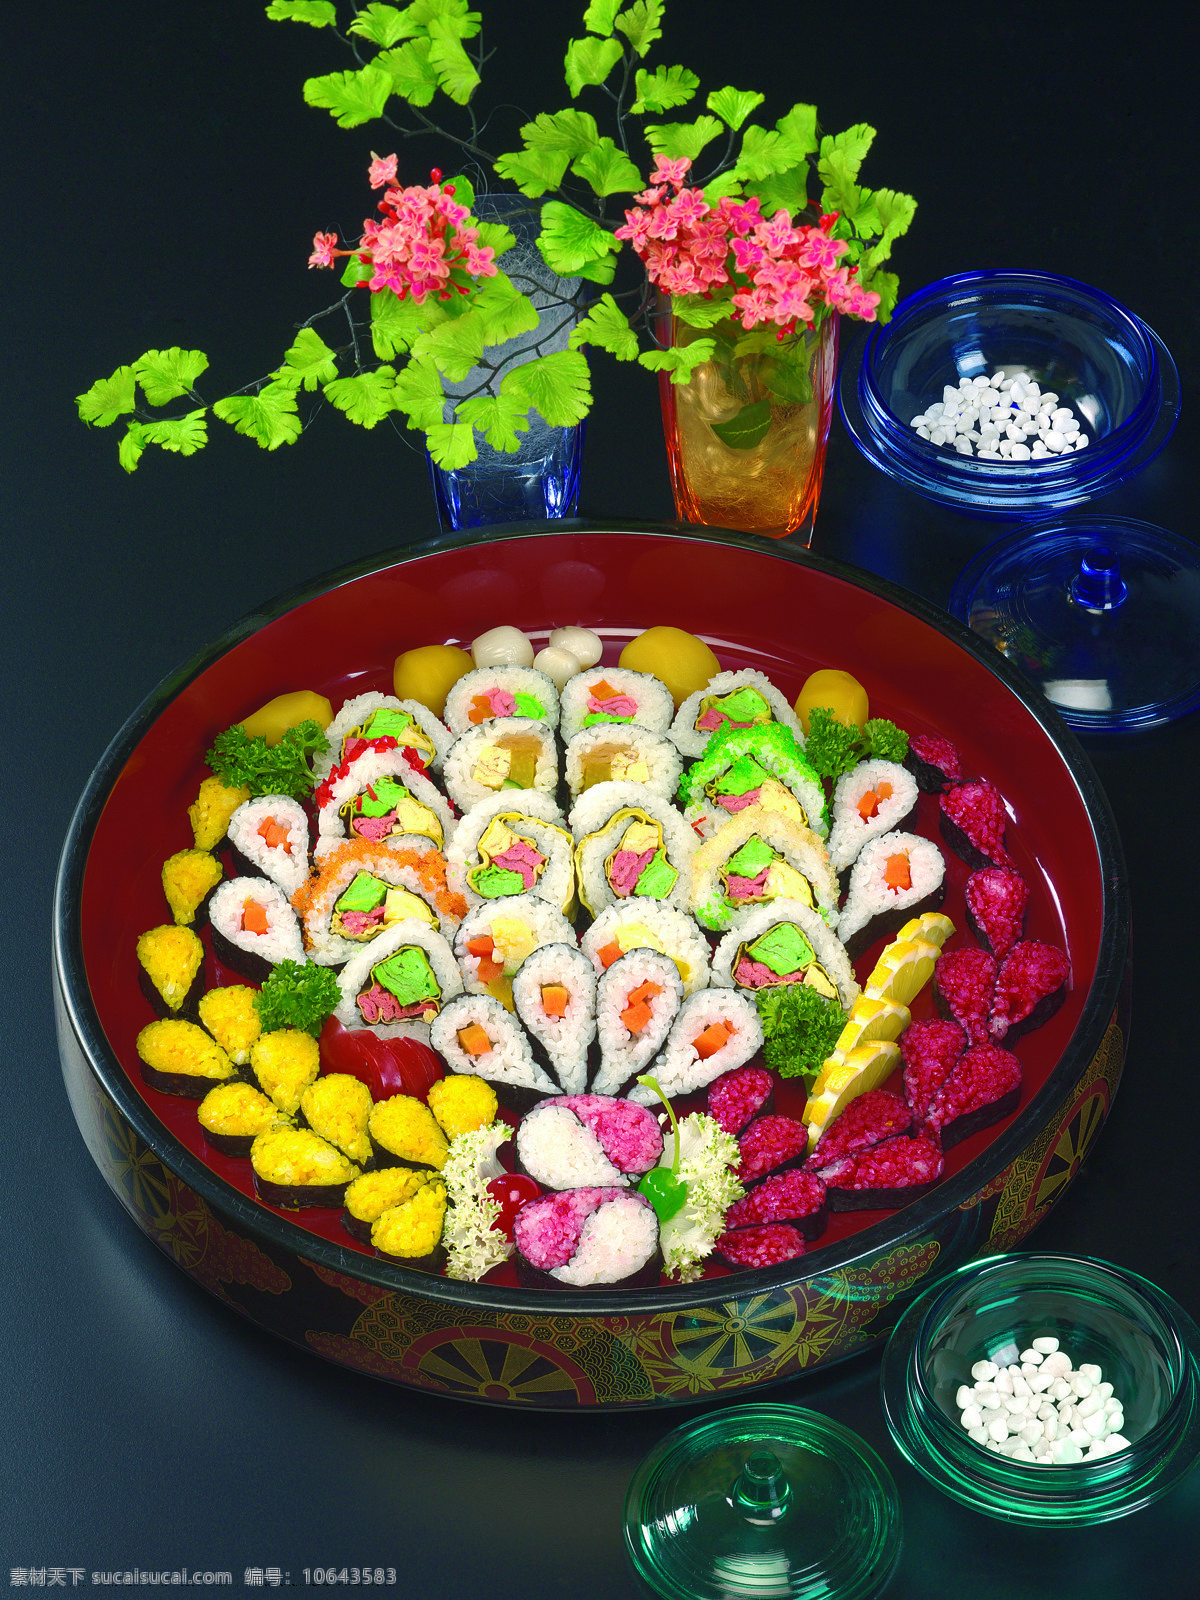 寿司 拼盘 寿司拼盘 日本寿司 海鲜 紫菜 美食 饭团 芥末 春卷 西餐美食 餐饮美食 外国美食